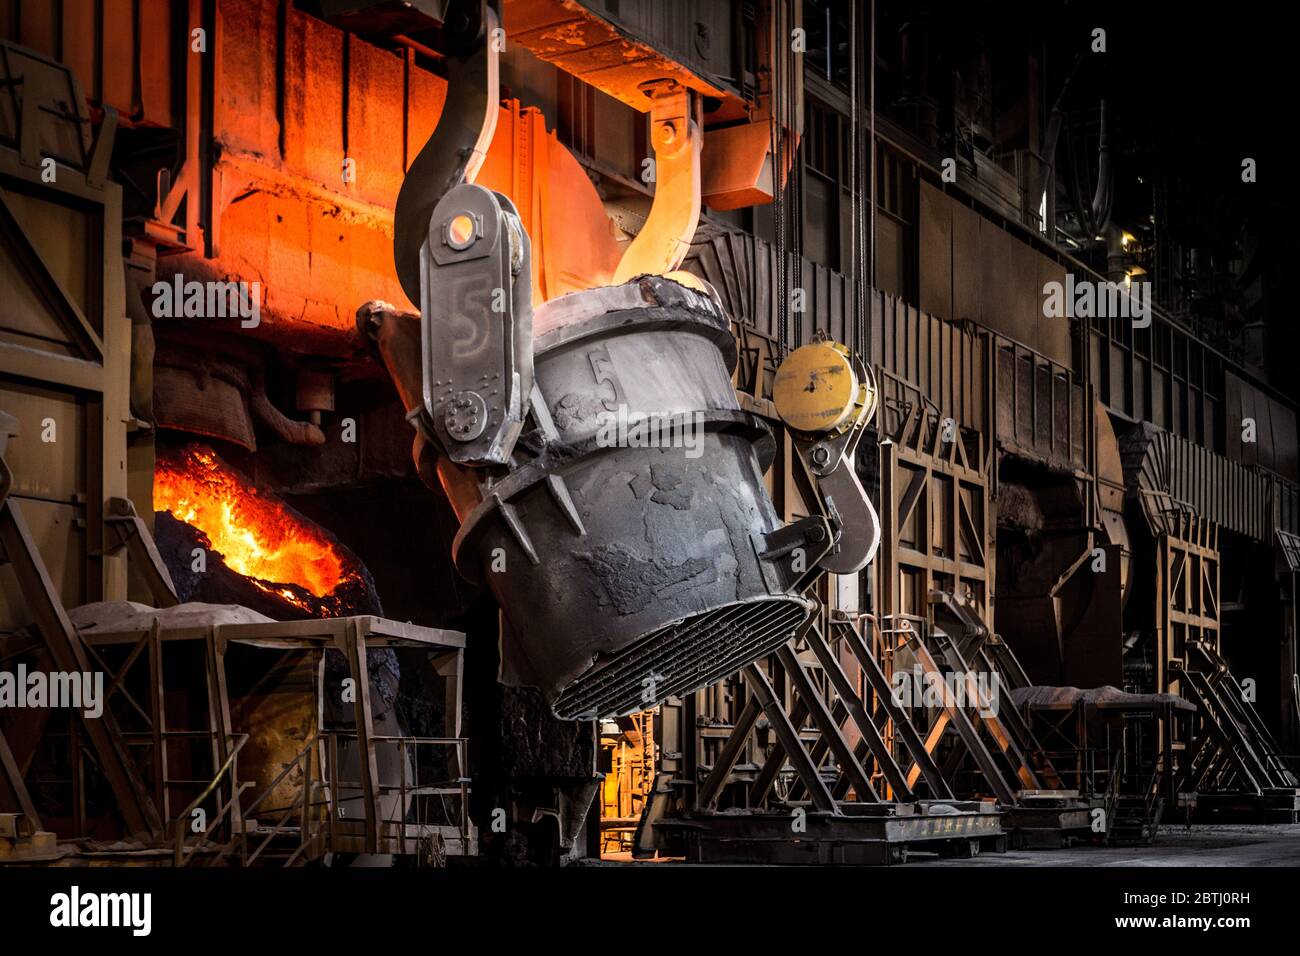 Scunthorpe - Heavy End - Stahlproduktion - Basic Oxygen Steelmaking -  Sauerstoff-Konverter Ofen mit geschmolzenem Eisen aus Schöpfkelle geladen  Stockfotografie - Alamy